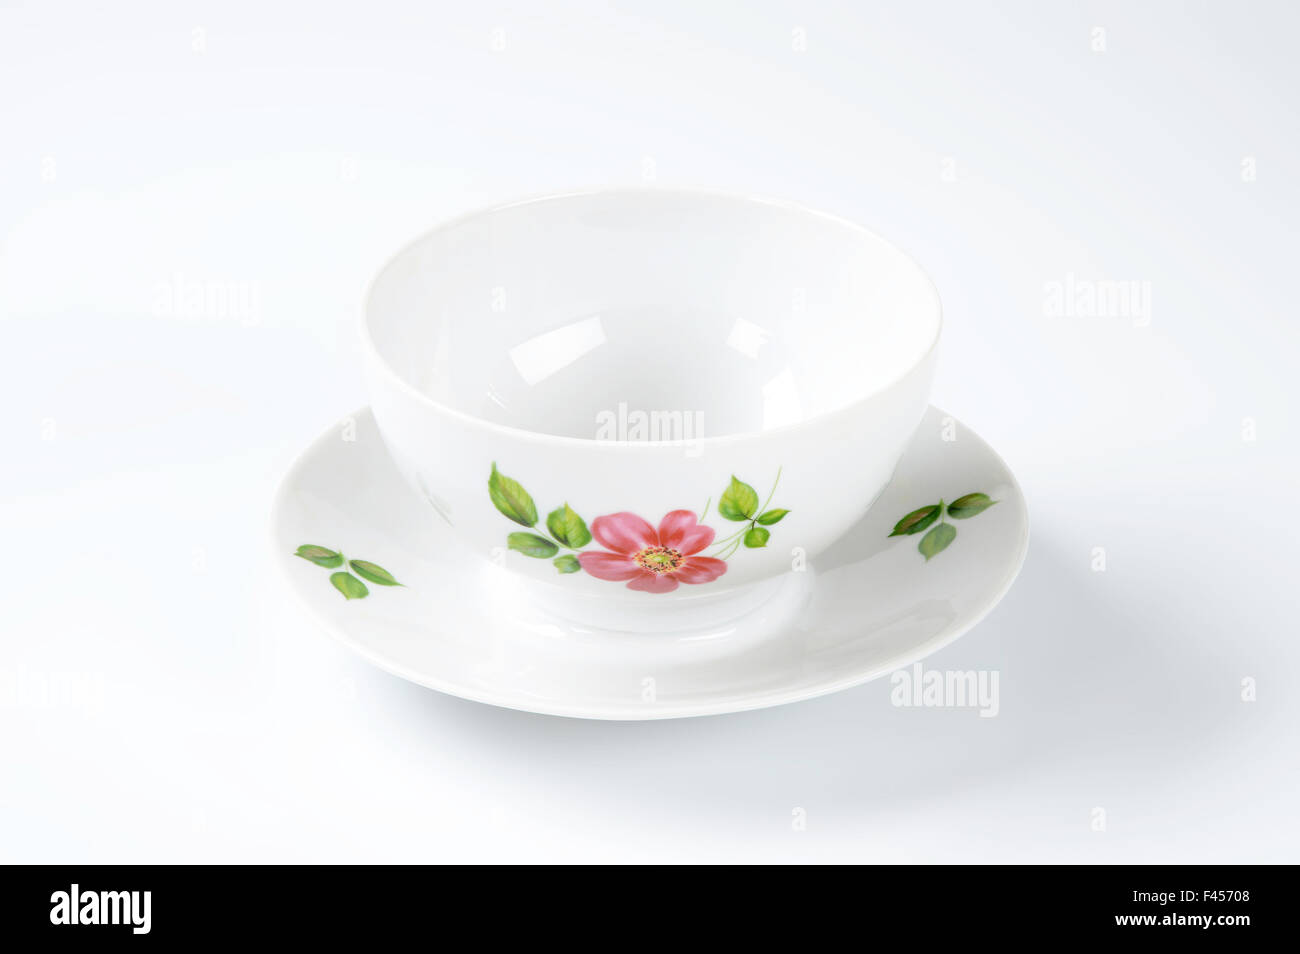 White tazza da tè con decorazioni floreali su sfondo bianco Foto Stock